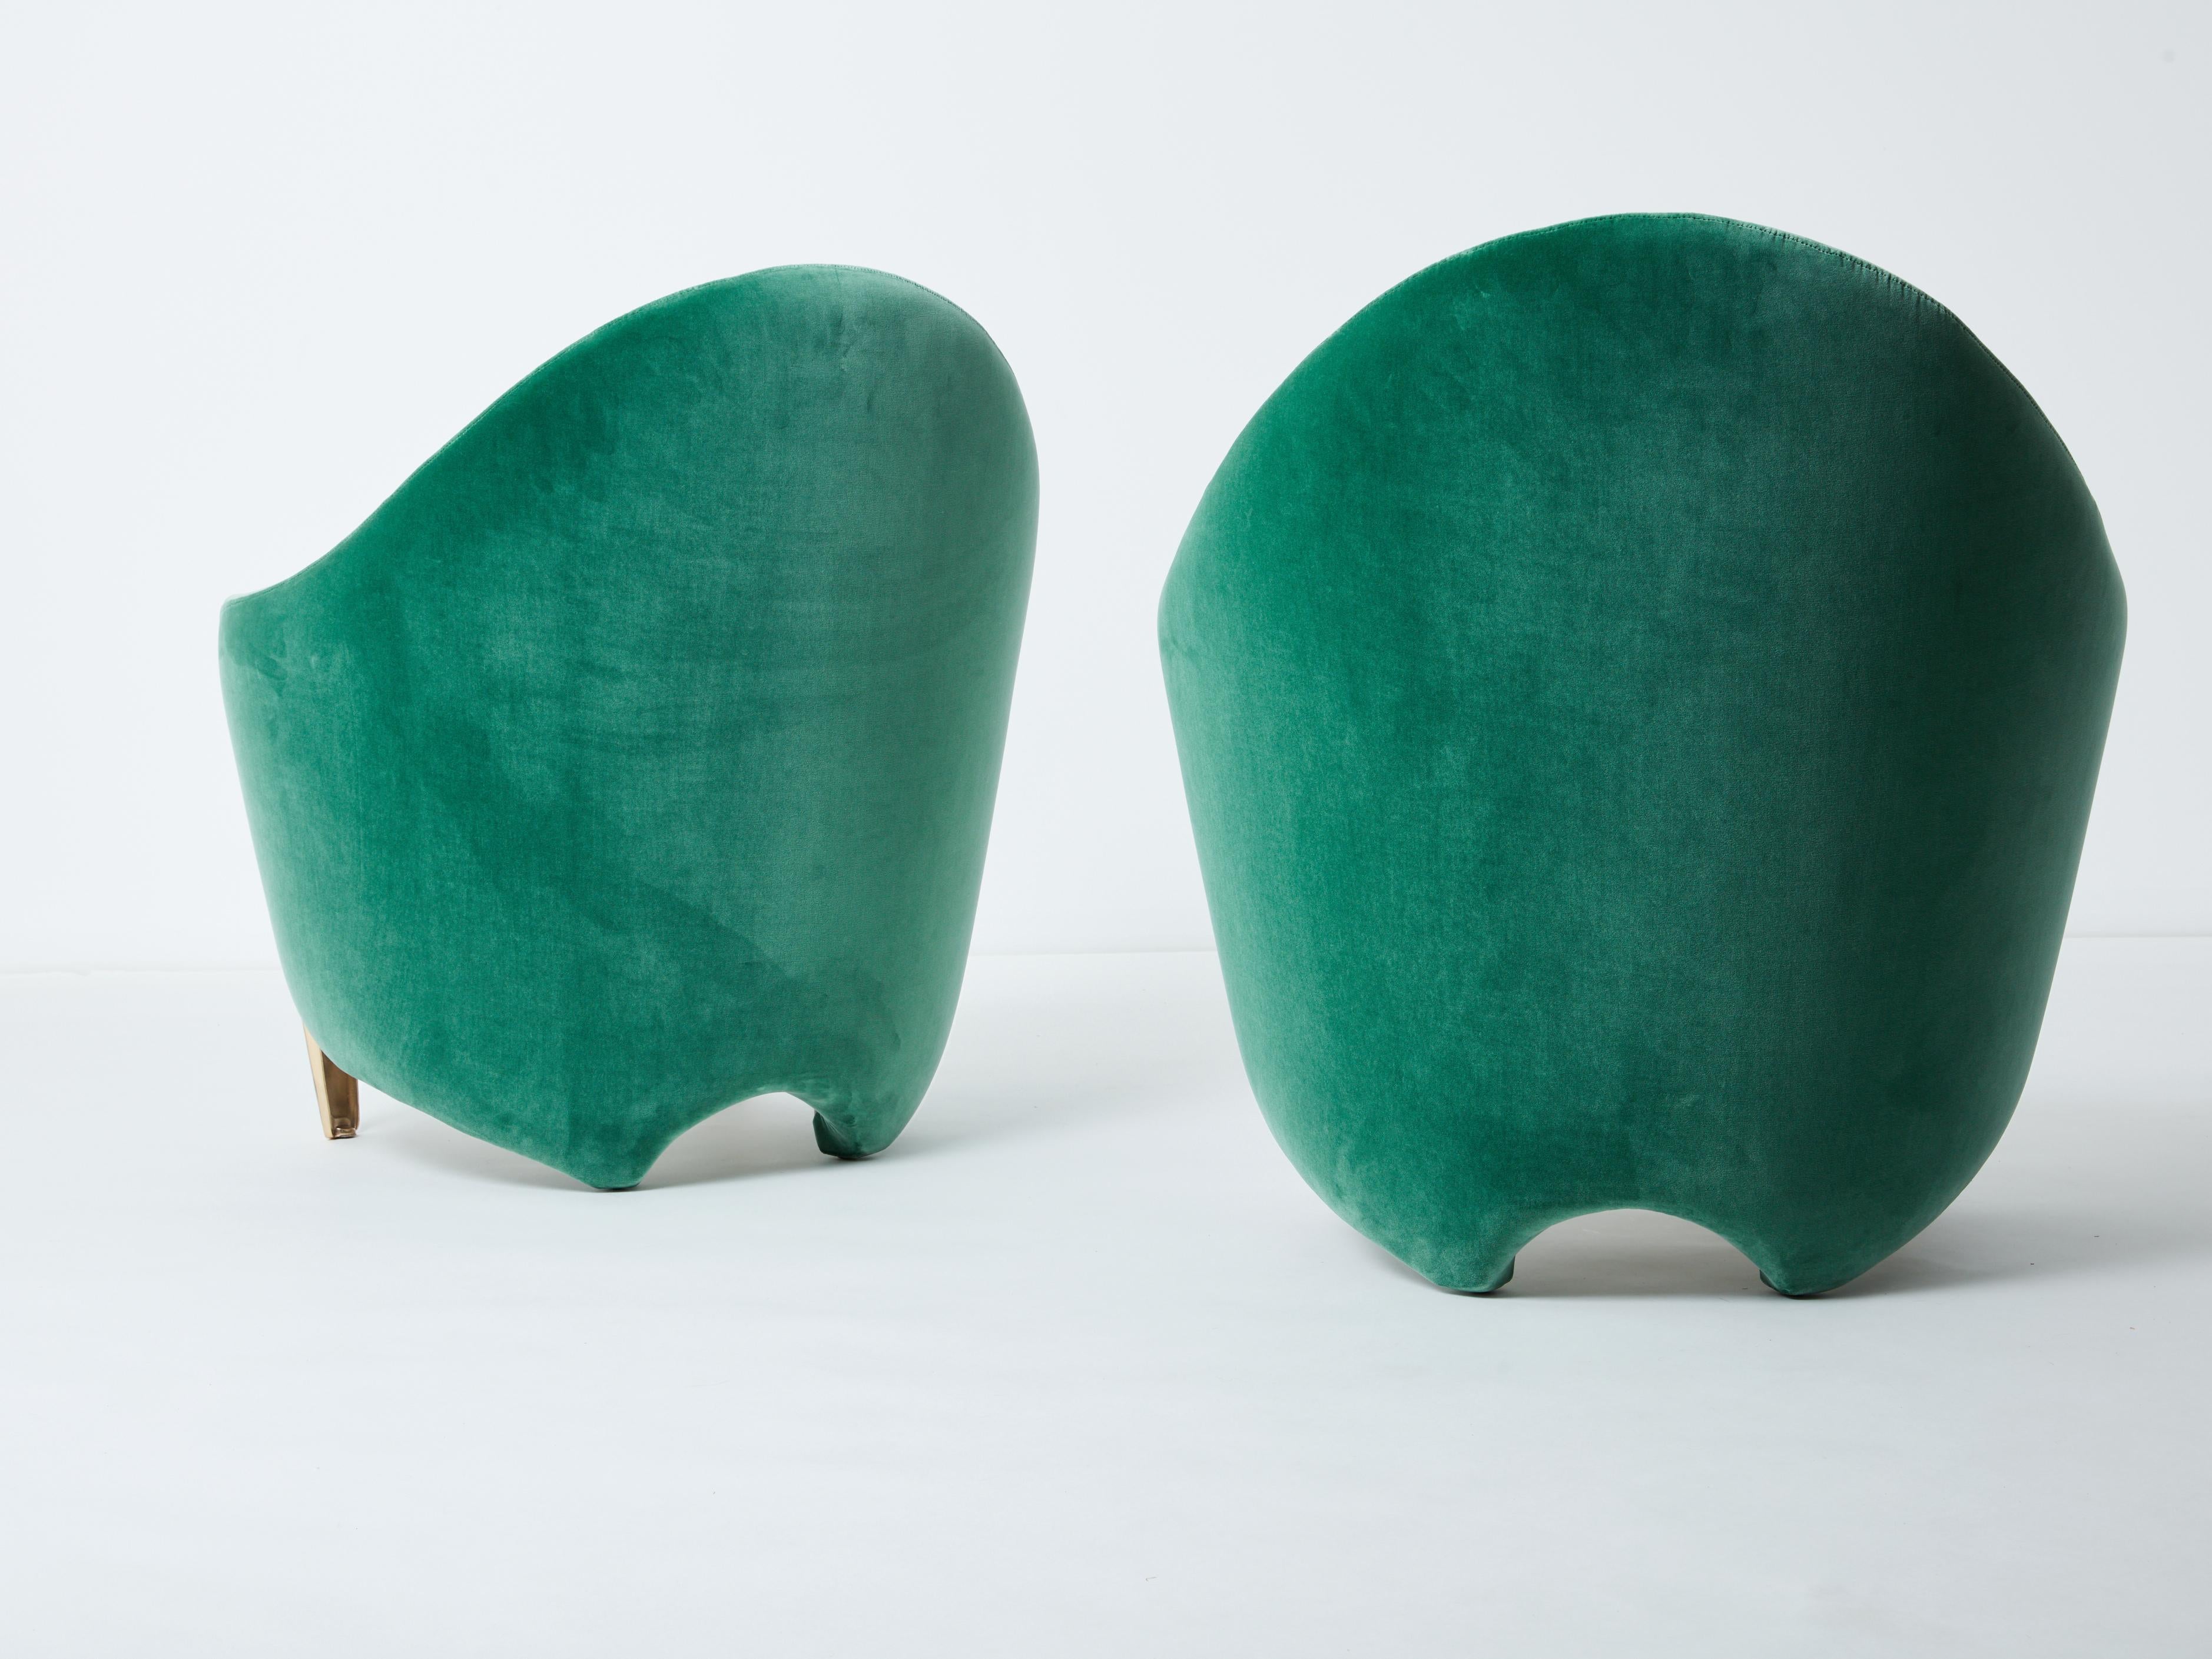 Pair of armchairs Garouste & Bonetti ‘Koala’ bronze green velvet 1995 For Sale 5